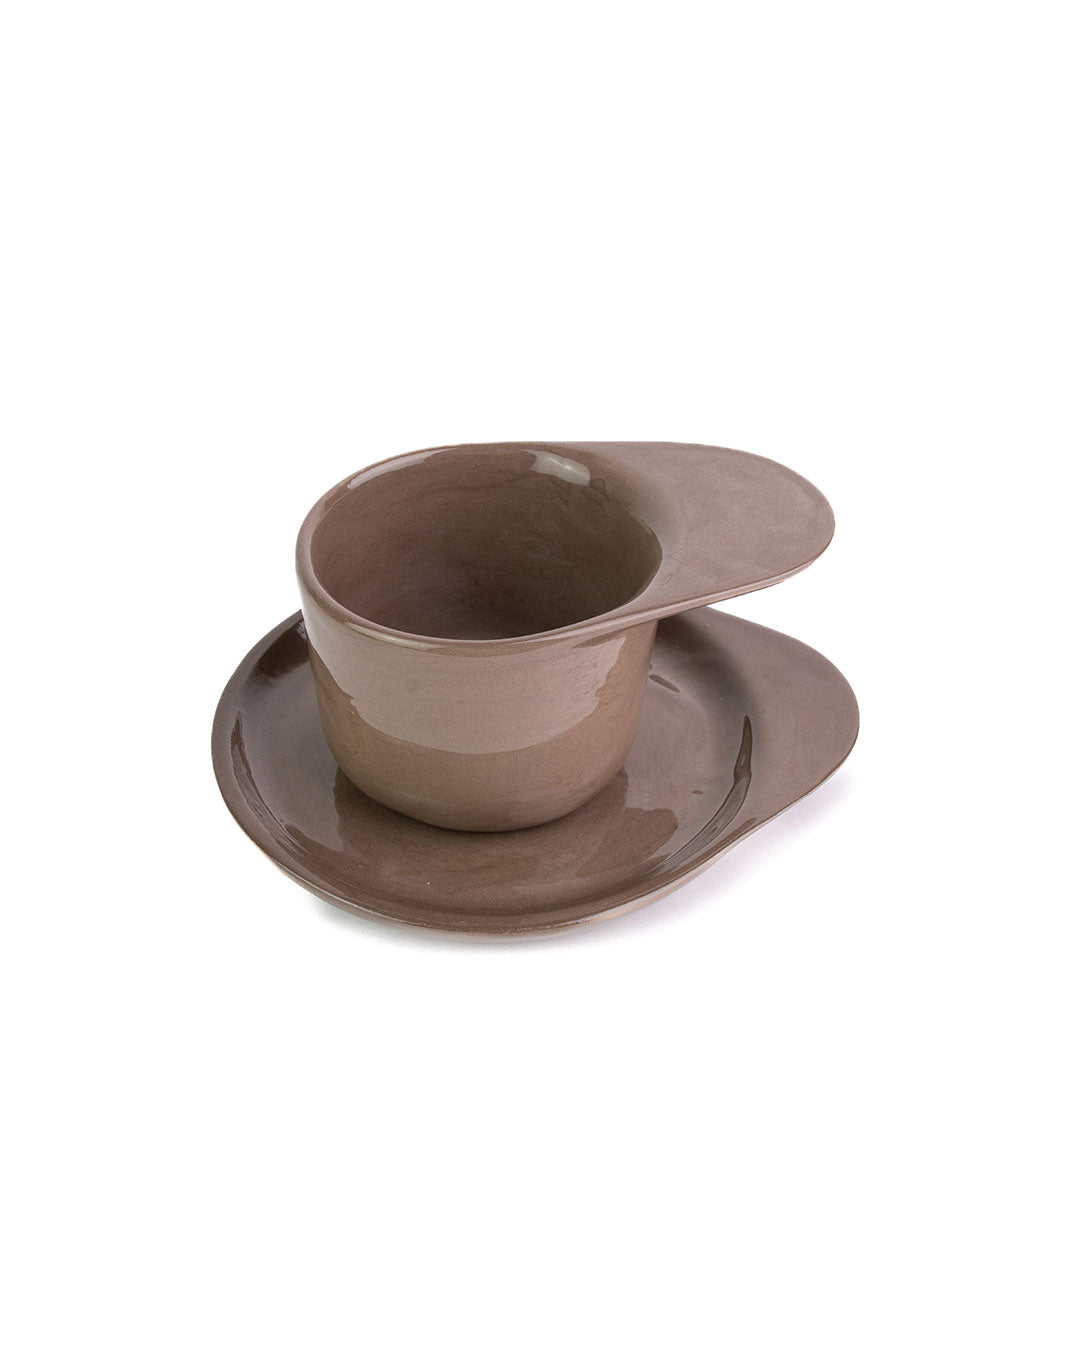 https://ta-daan.com/cdn/shop/products/Nu-Ceramica_espresso-cup_1c.jpg?v=1685613473&width=1080